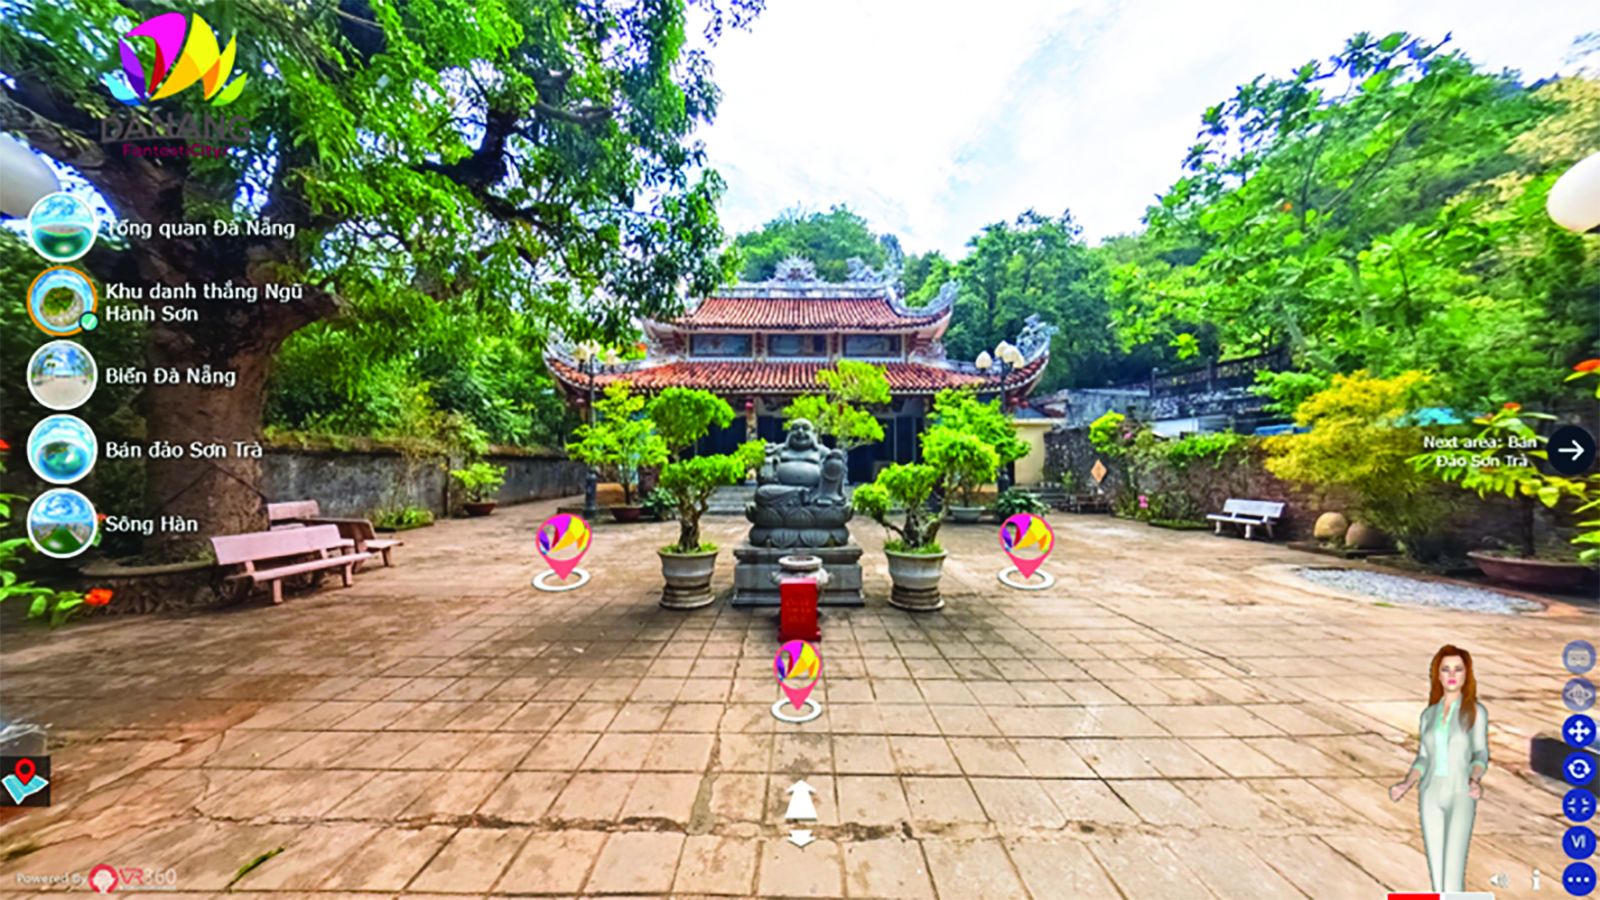 p/Trải nghiệm các điểm đến du lịch thông qua ứng dụng VR360 Một chạm đến Đà Nẵng.p/Ảnh: THU HÀ